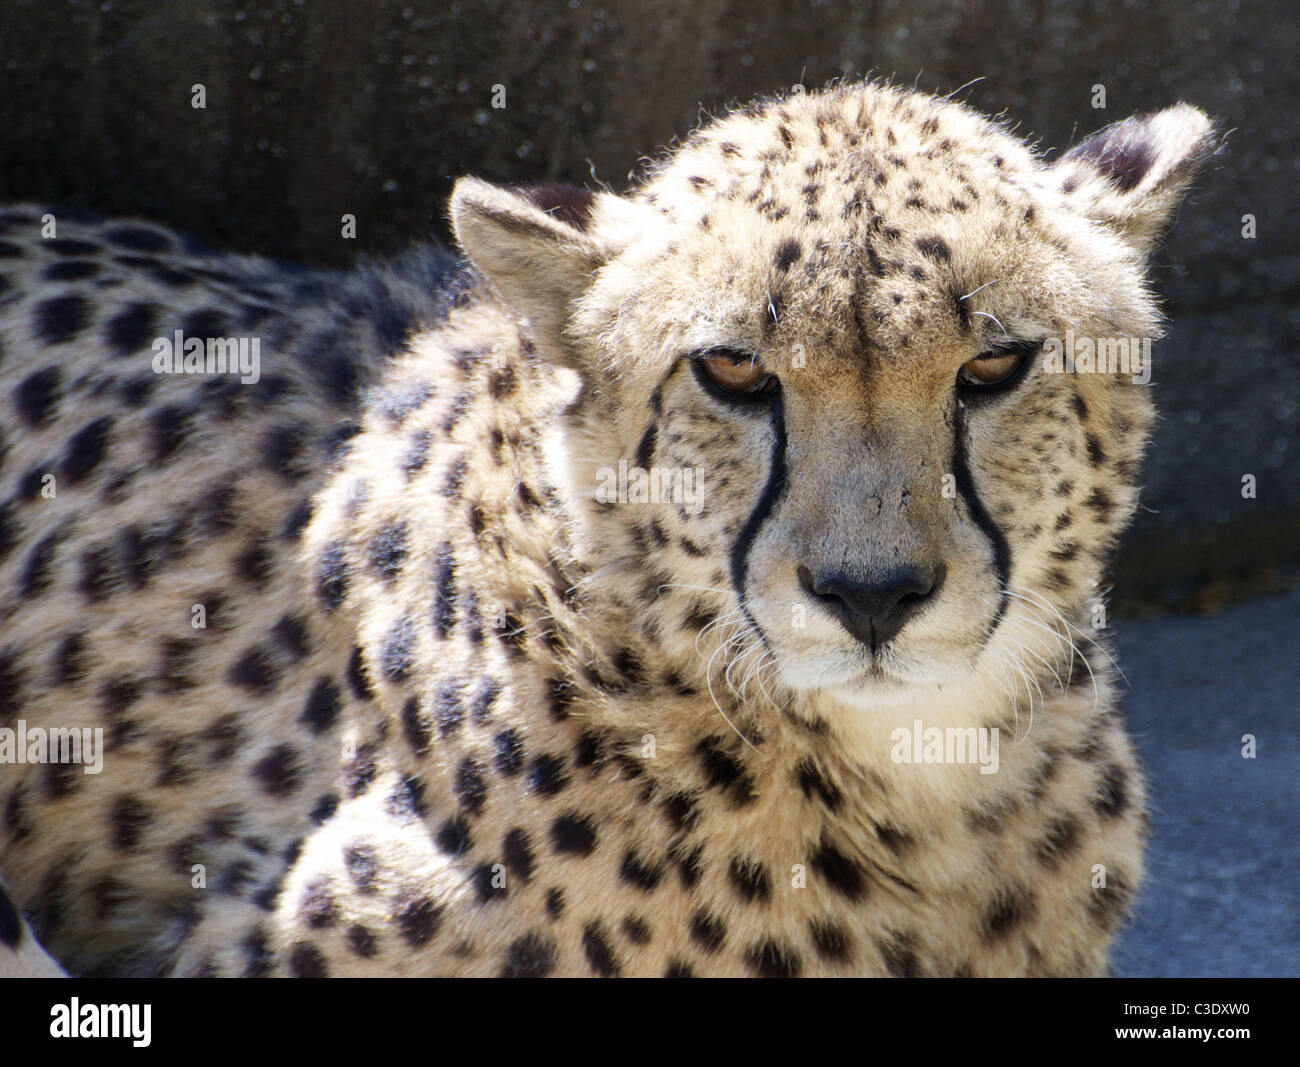 Cheetah looking at camera Stock Photo